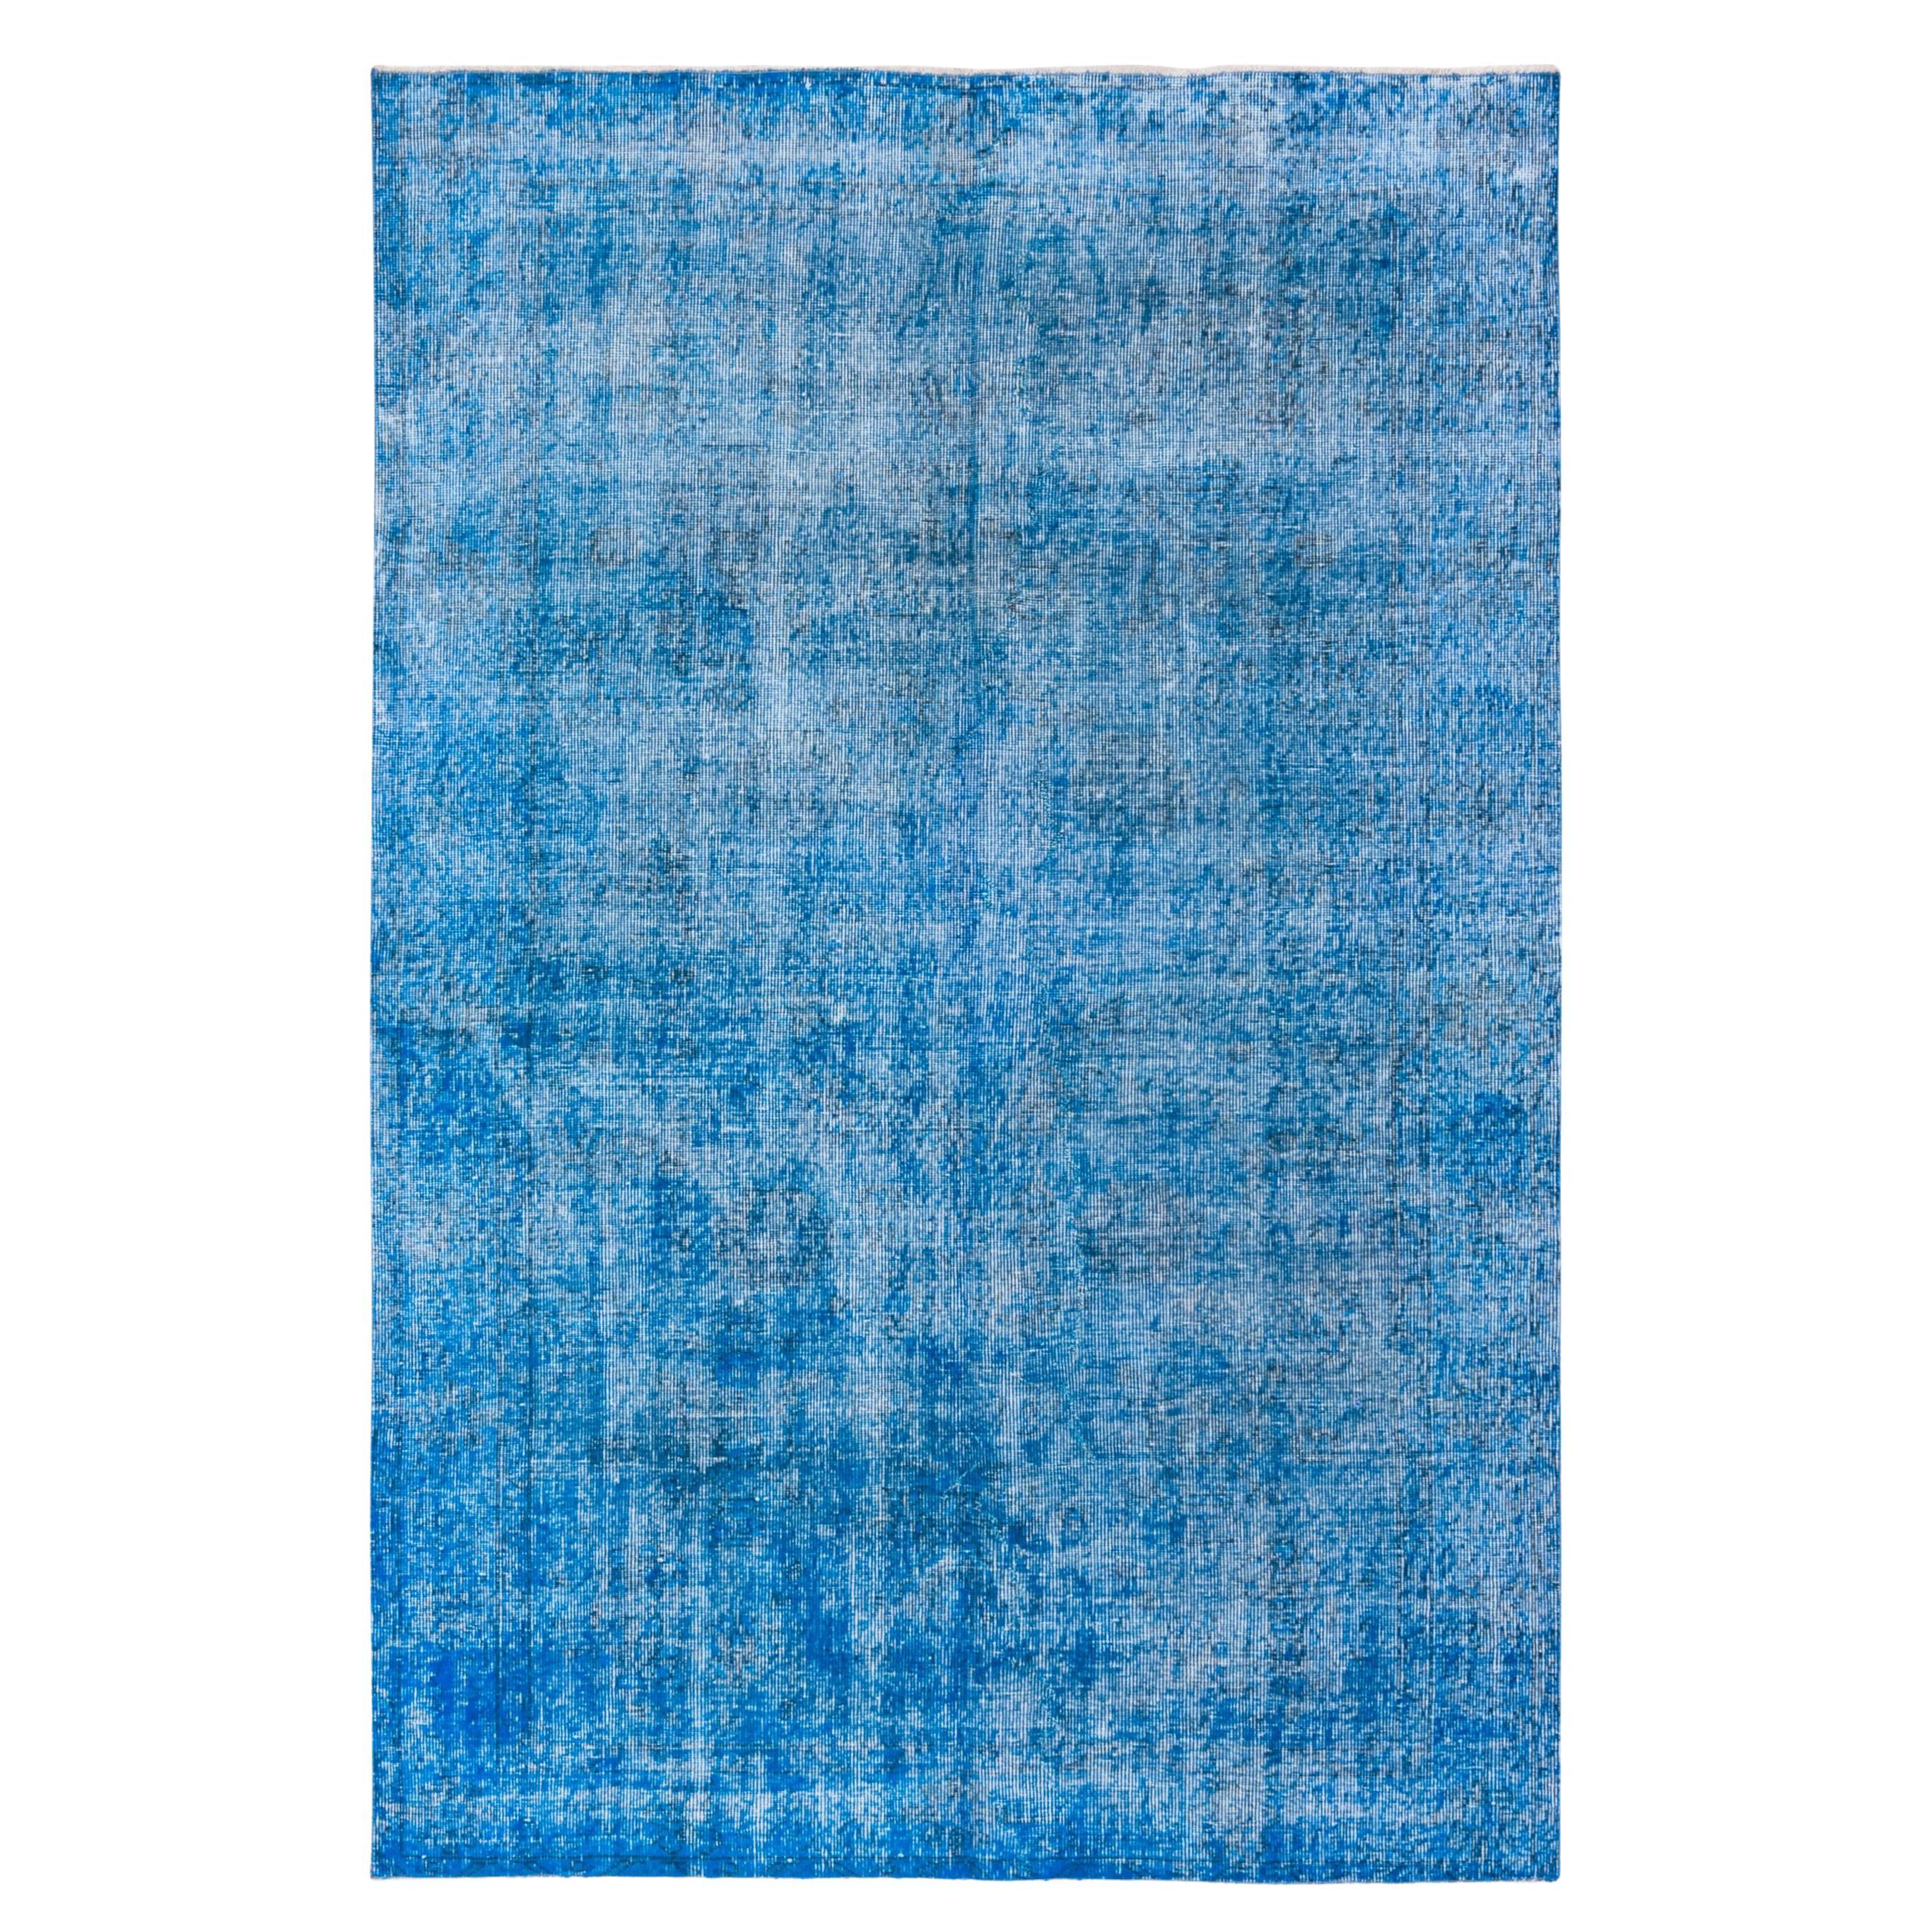 Überzogener blauer Teppich im Shabby-Chic-Stil, leuchtend farbenfroh